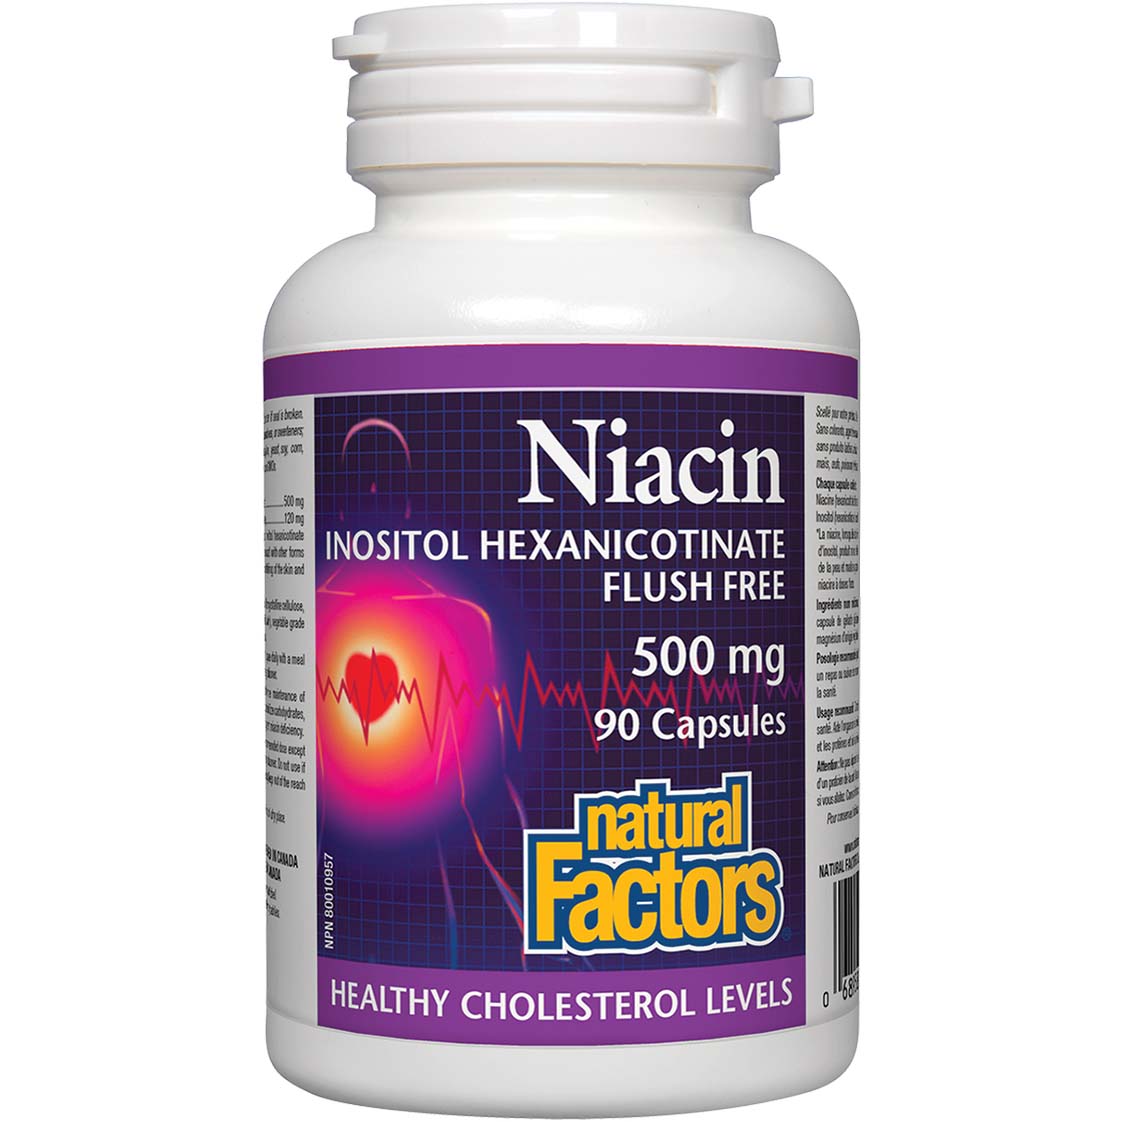 ناتشورال فاكتورز النياسين إينوزيتول هيكسانيكوتينات, 500  ملجم, 90 كبسولة